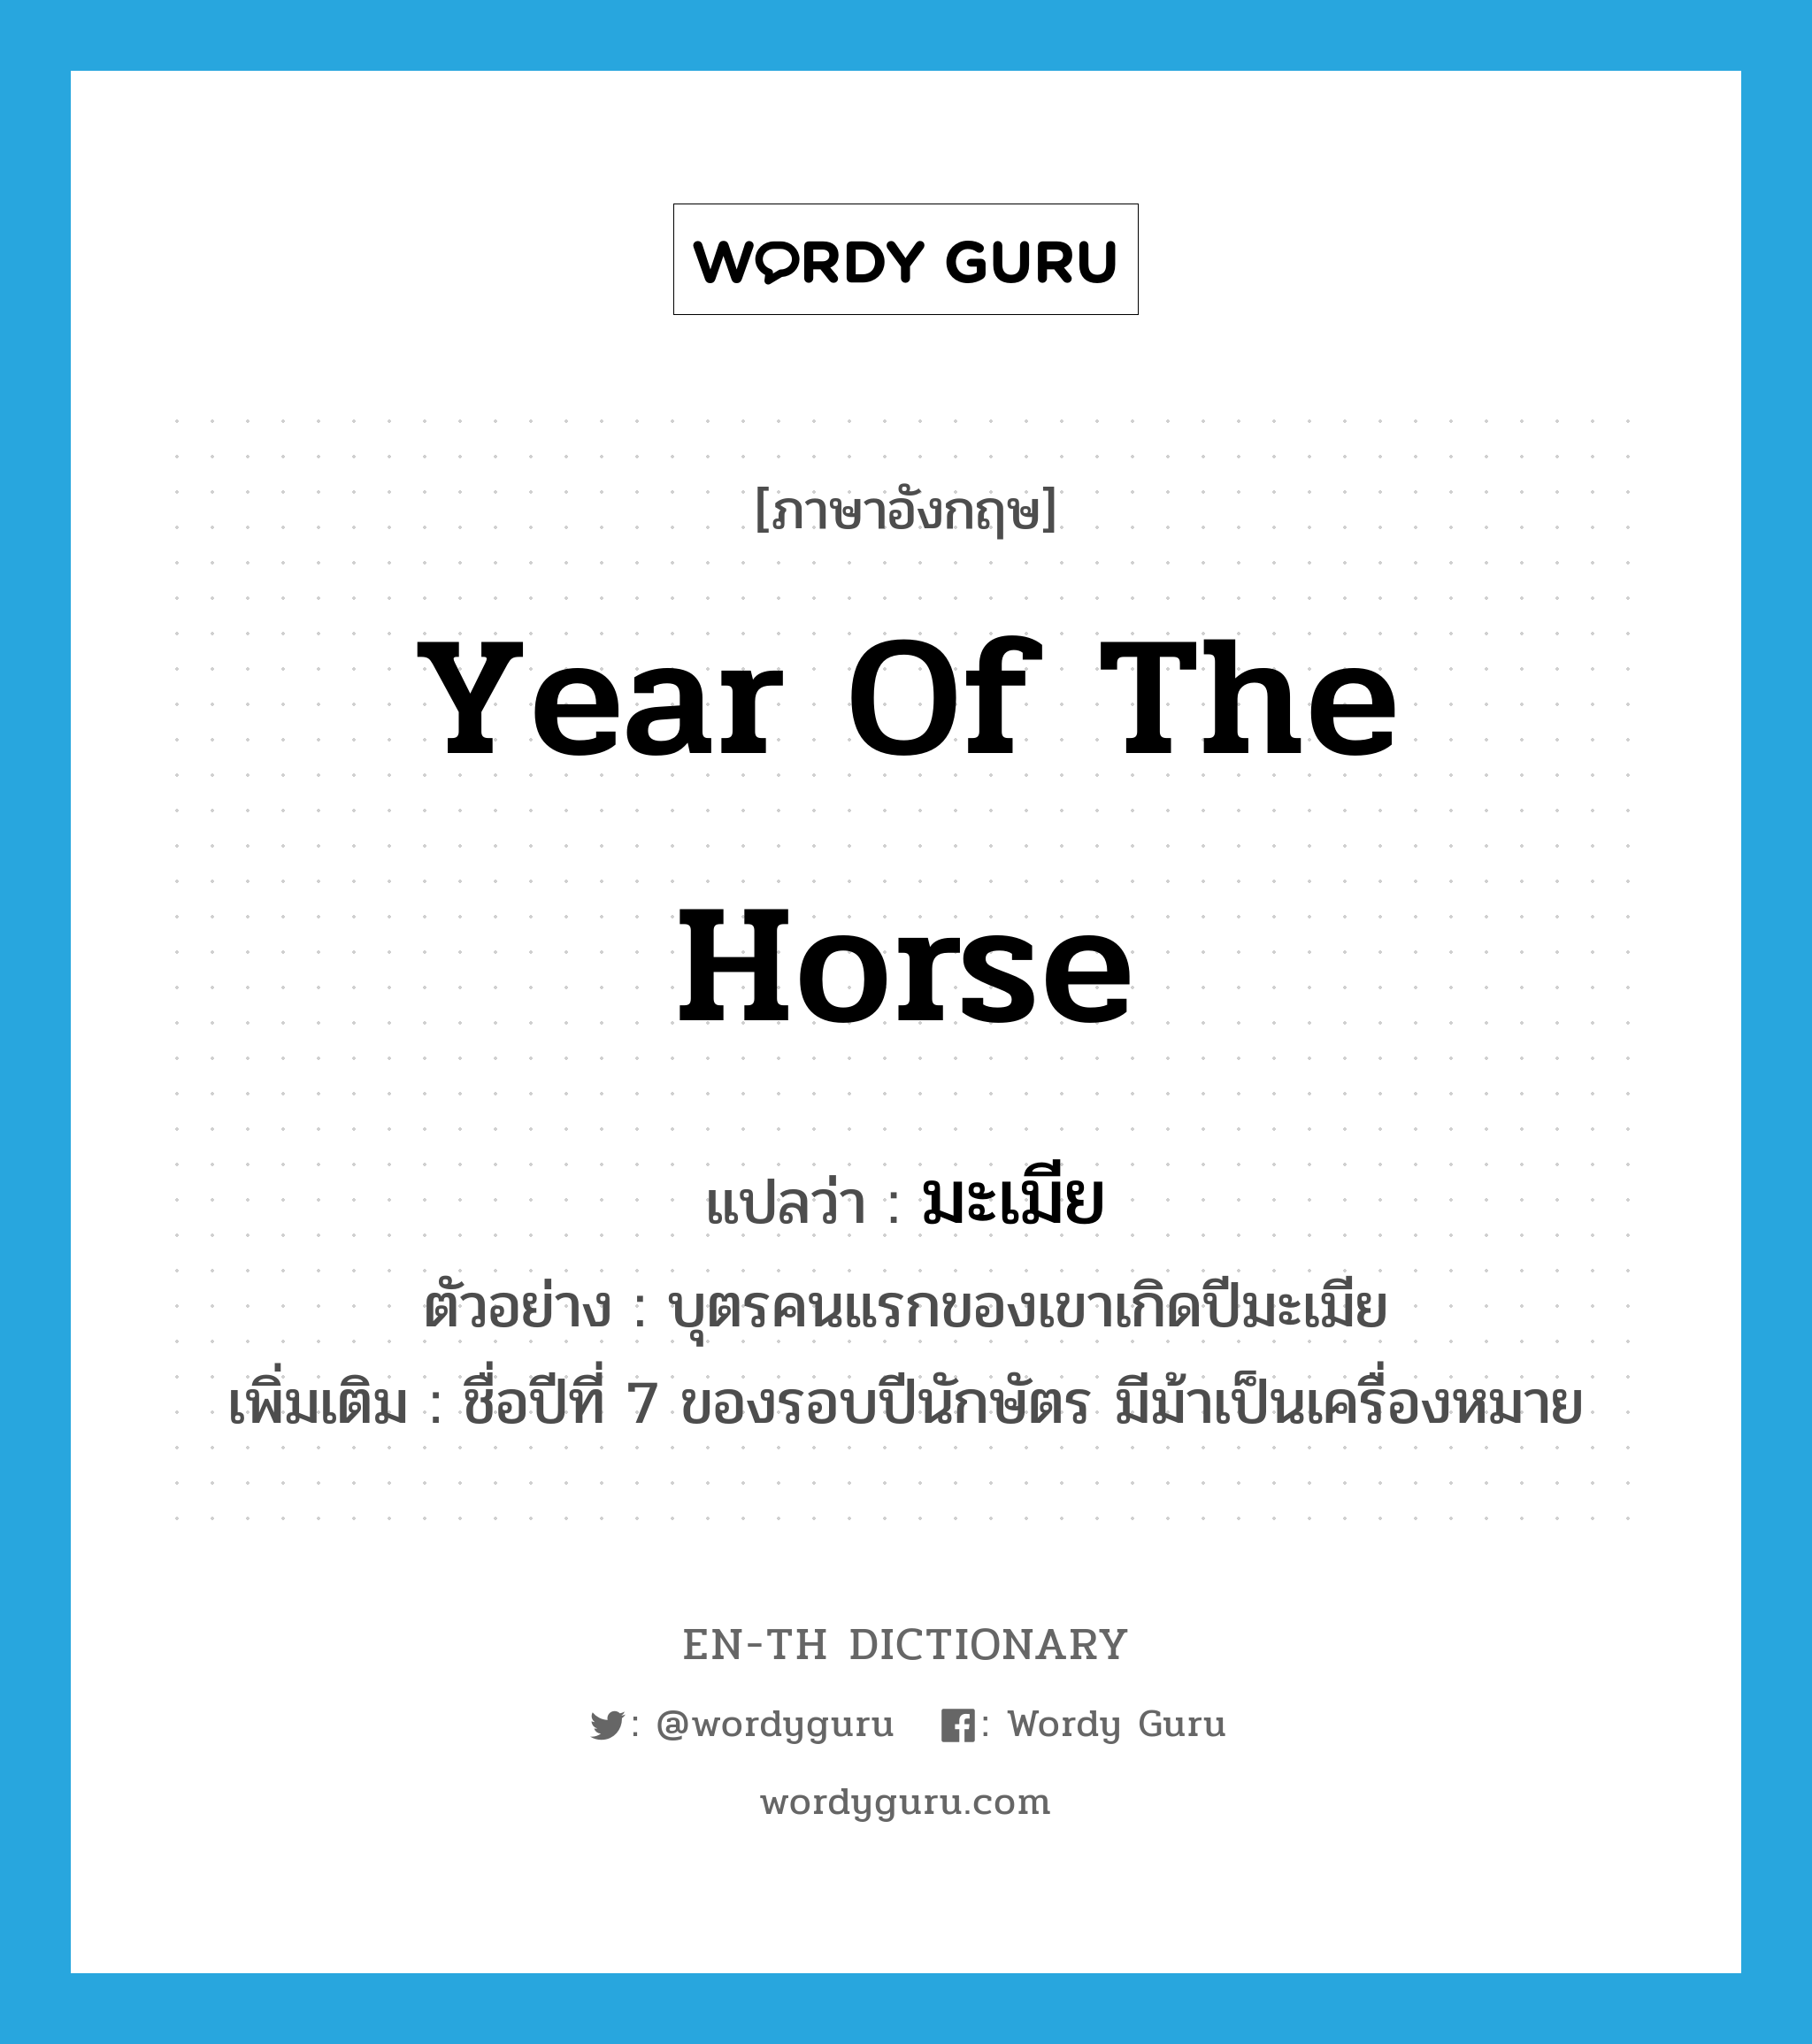 year of the Horse แปลว่า?, คำศัพท์ภาษาอังกฤษ year of the Horse แปลว่า มะเมีย ประเภท N ตัวอย่าง บุตรคนแรกของเขาเกิดปีมะเมีย เพิ่มเติม ชื่อปีที่ 7 ของรอบปีนักษัตร มีม้าเป็นเครื่องหมาย หมวด N